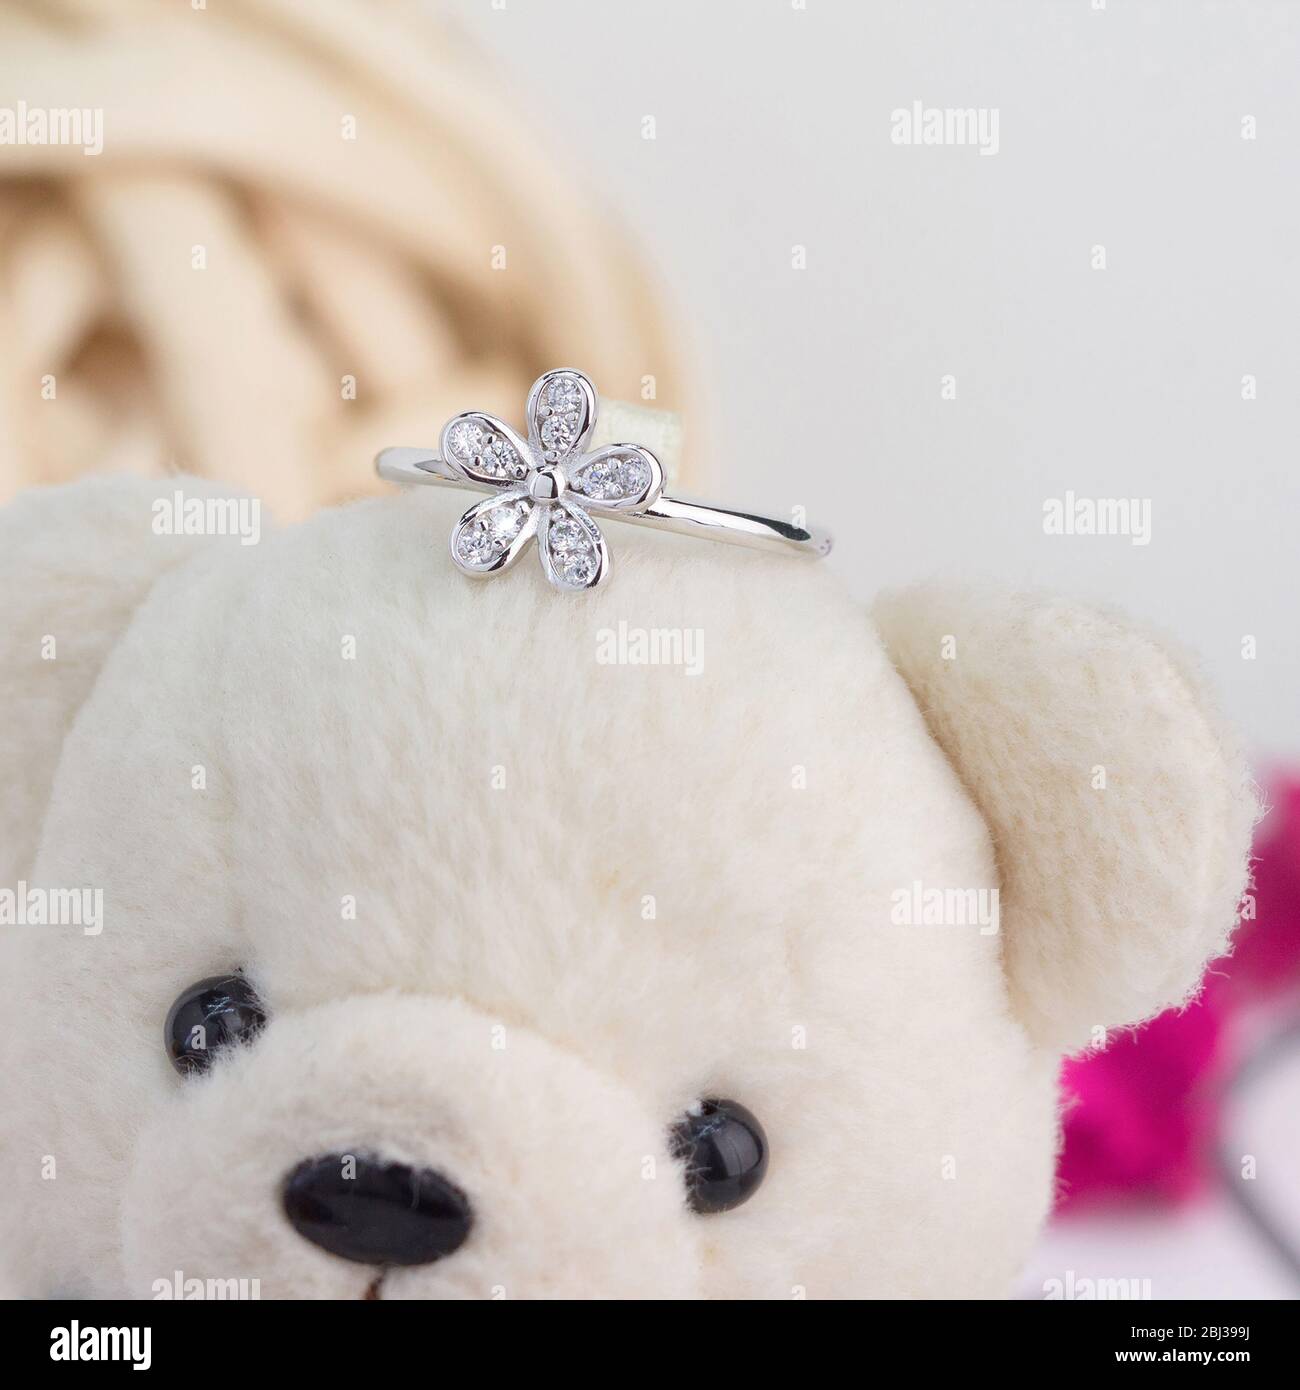 Niedlicher silberner Ring in der Blumenform mit Diamanten verziert Display auf Spielzeug Bär Stockfoto